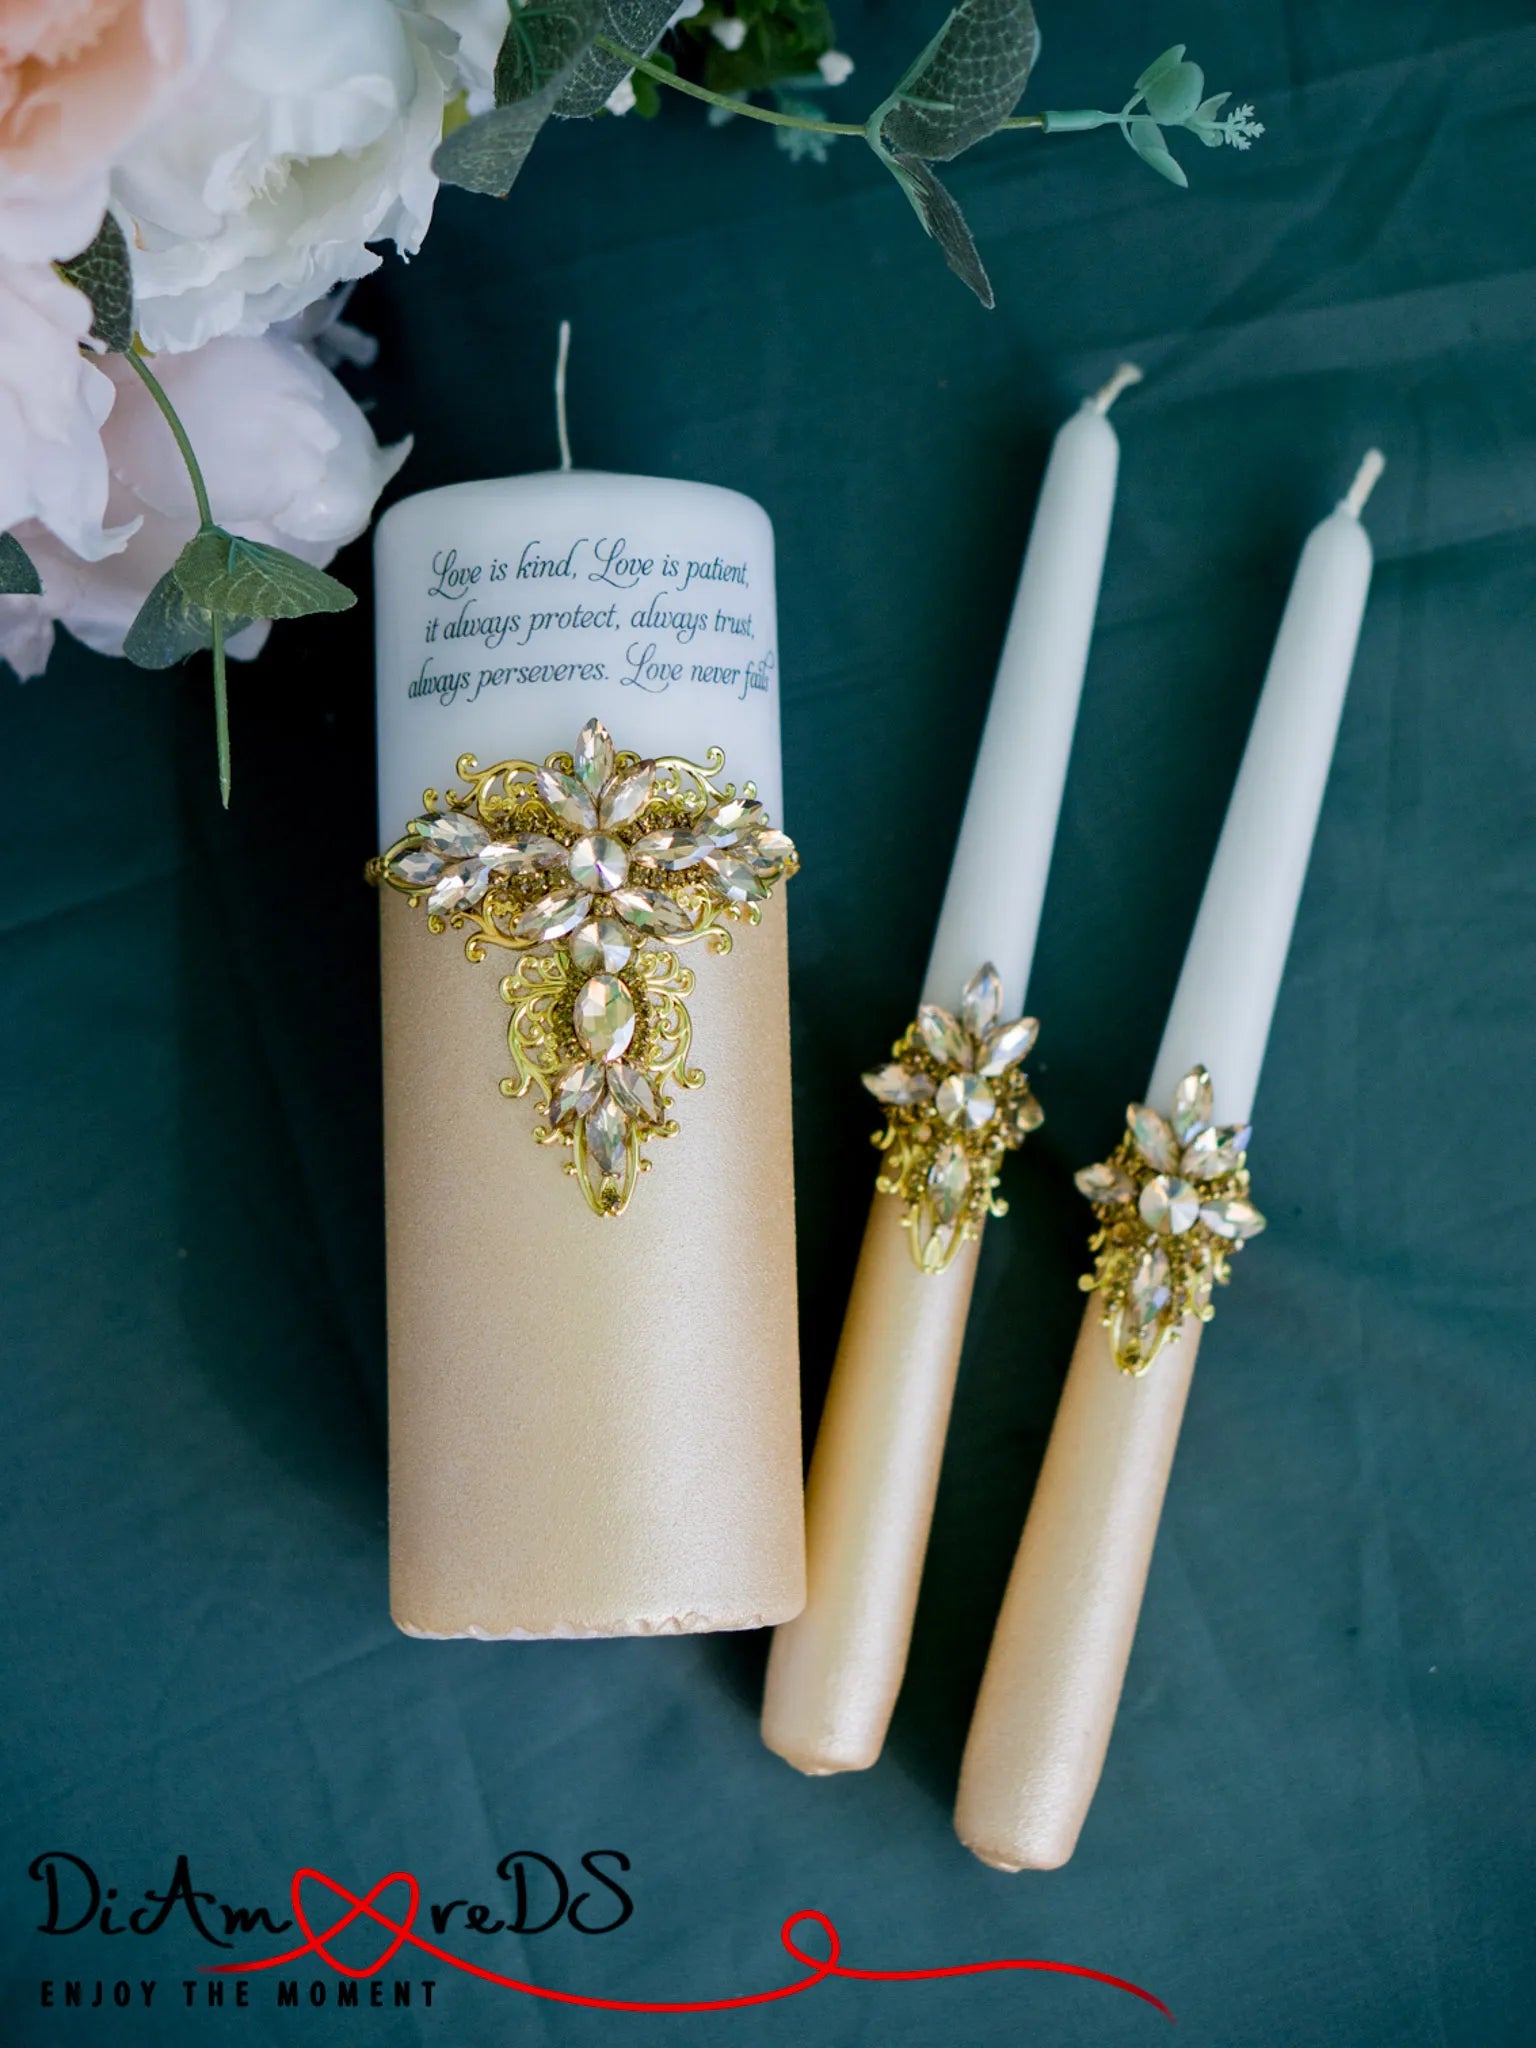 Elegant gold crystal unity candle set